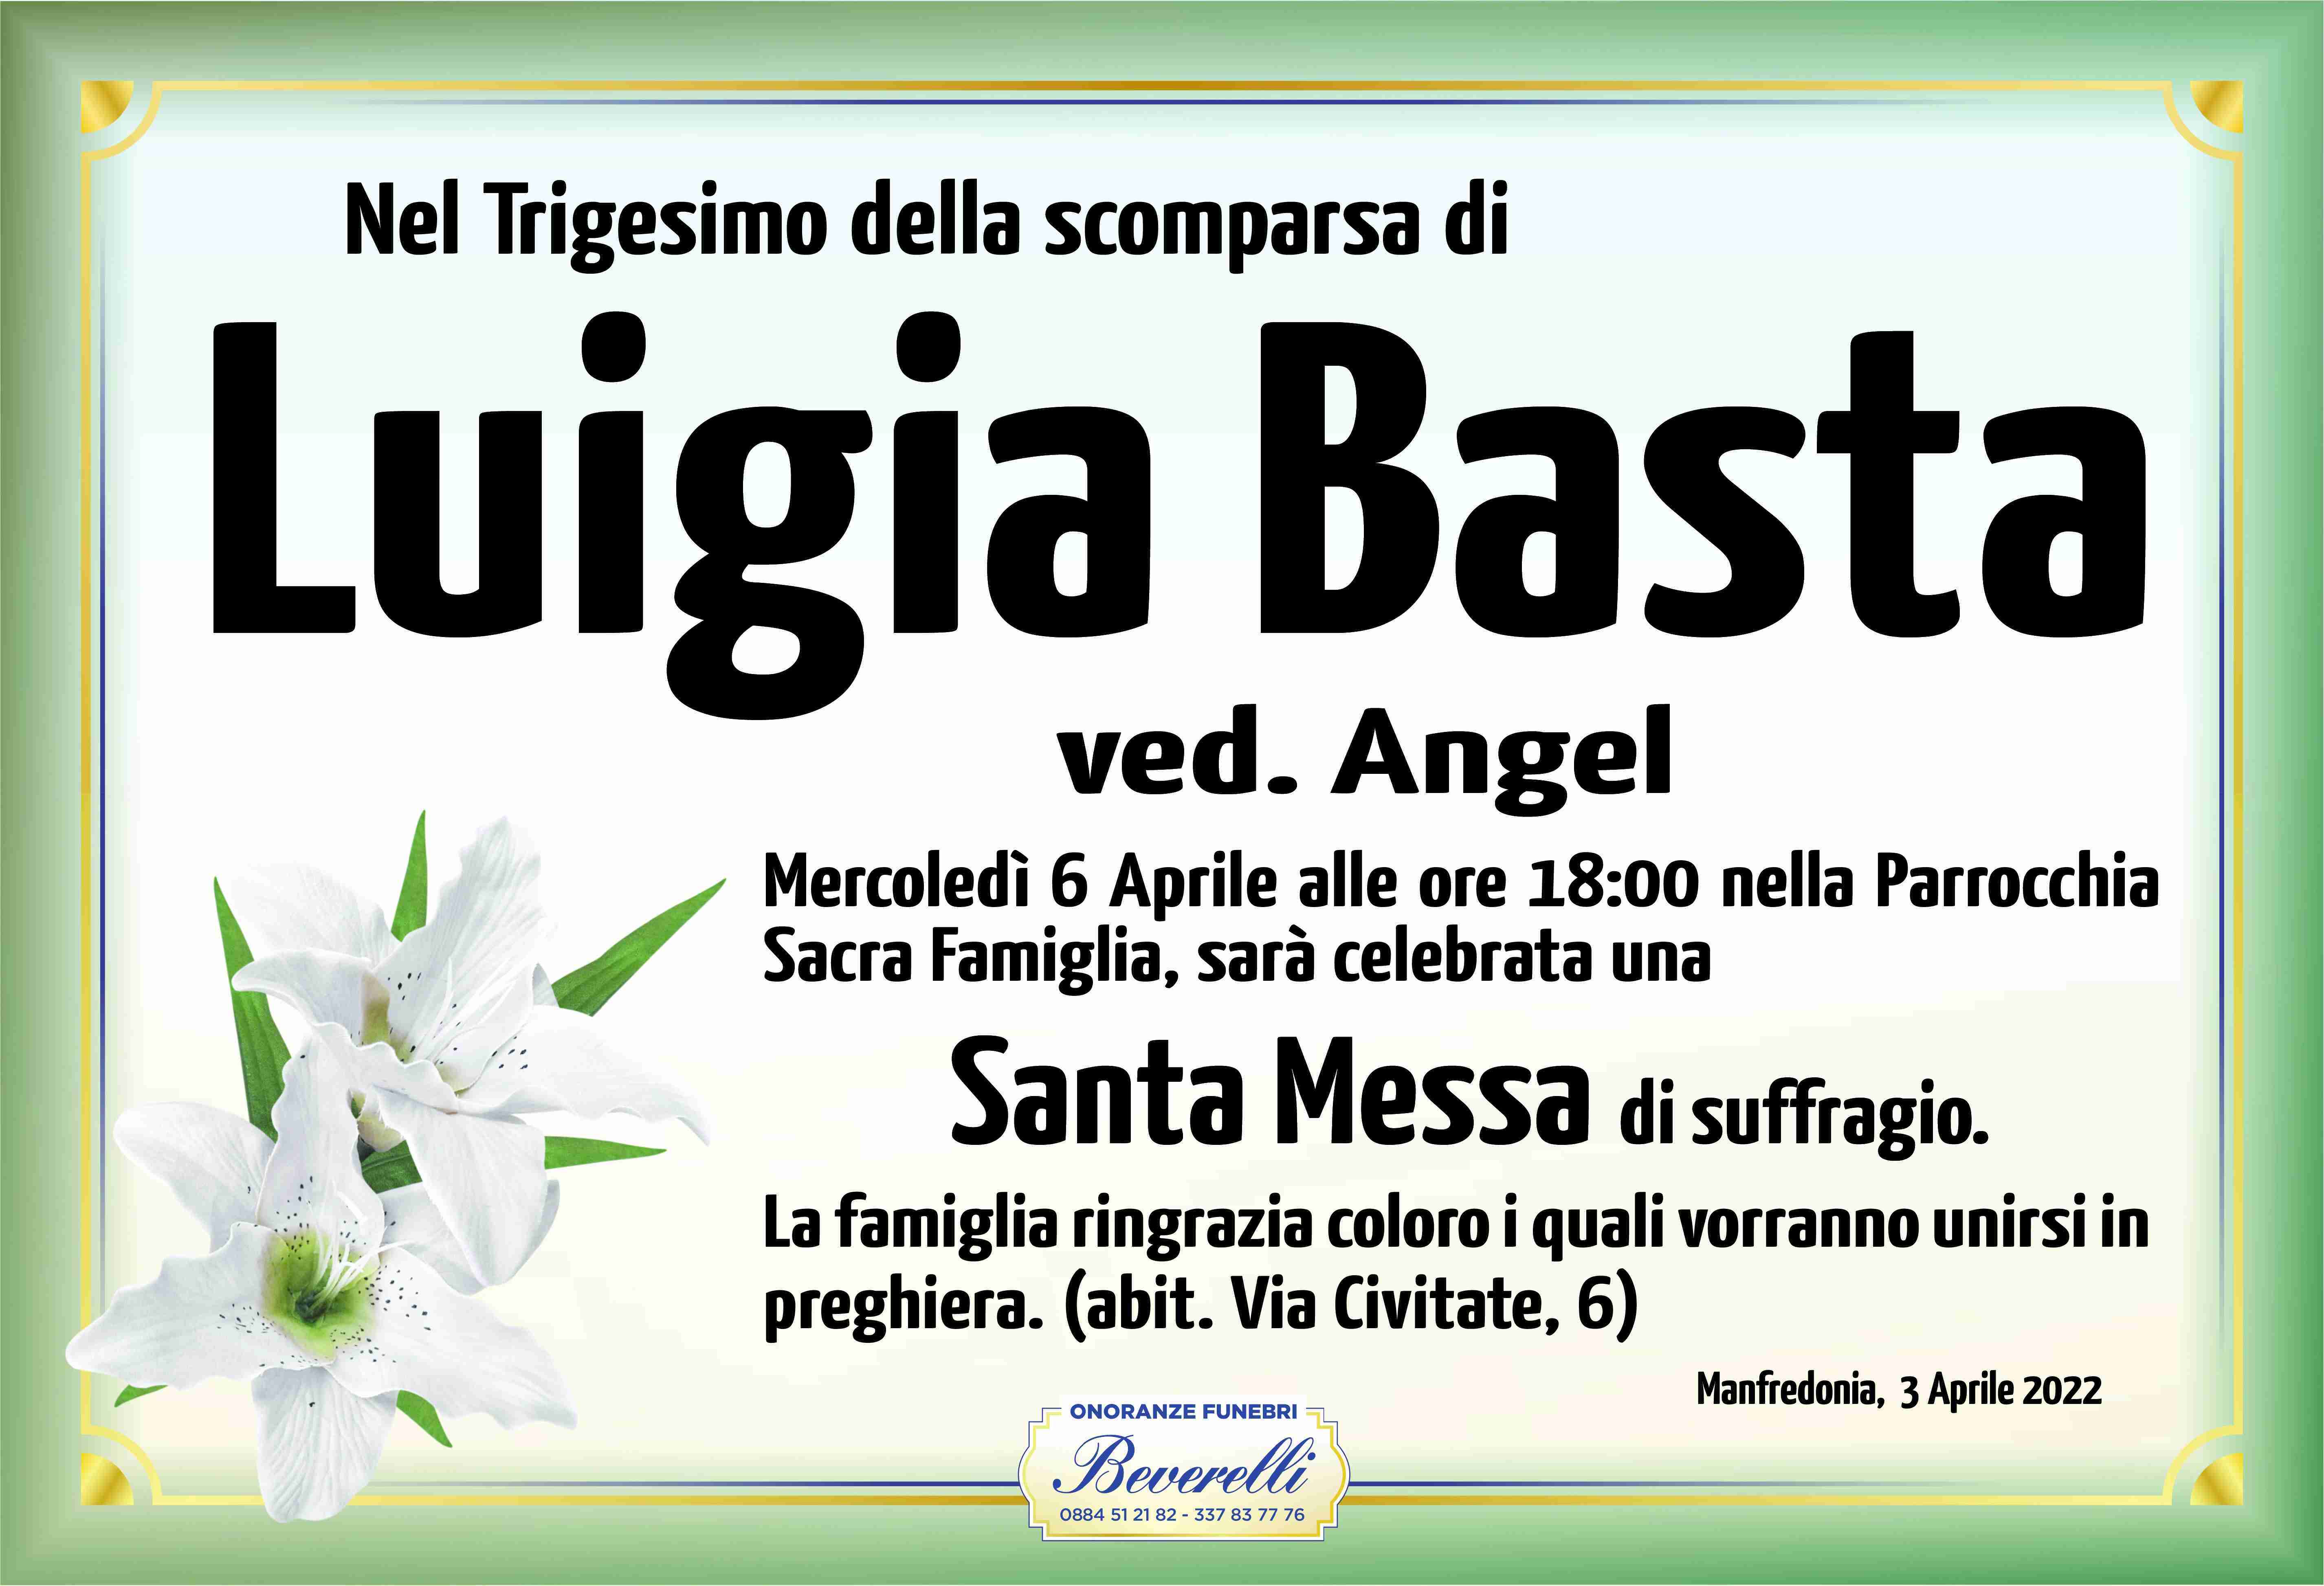 Luigia Basta